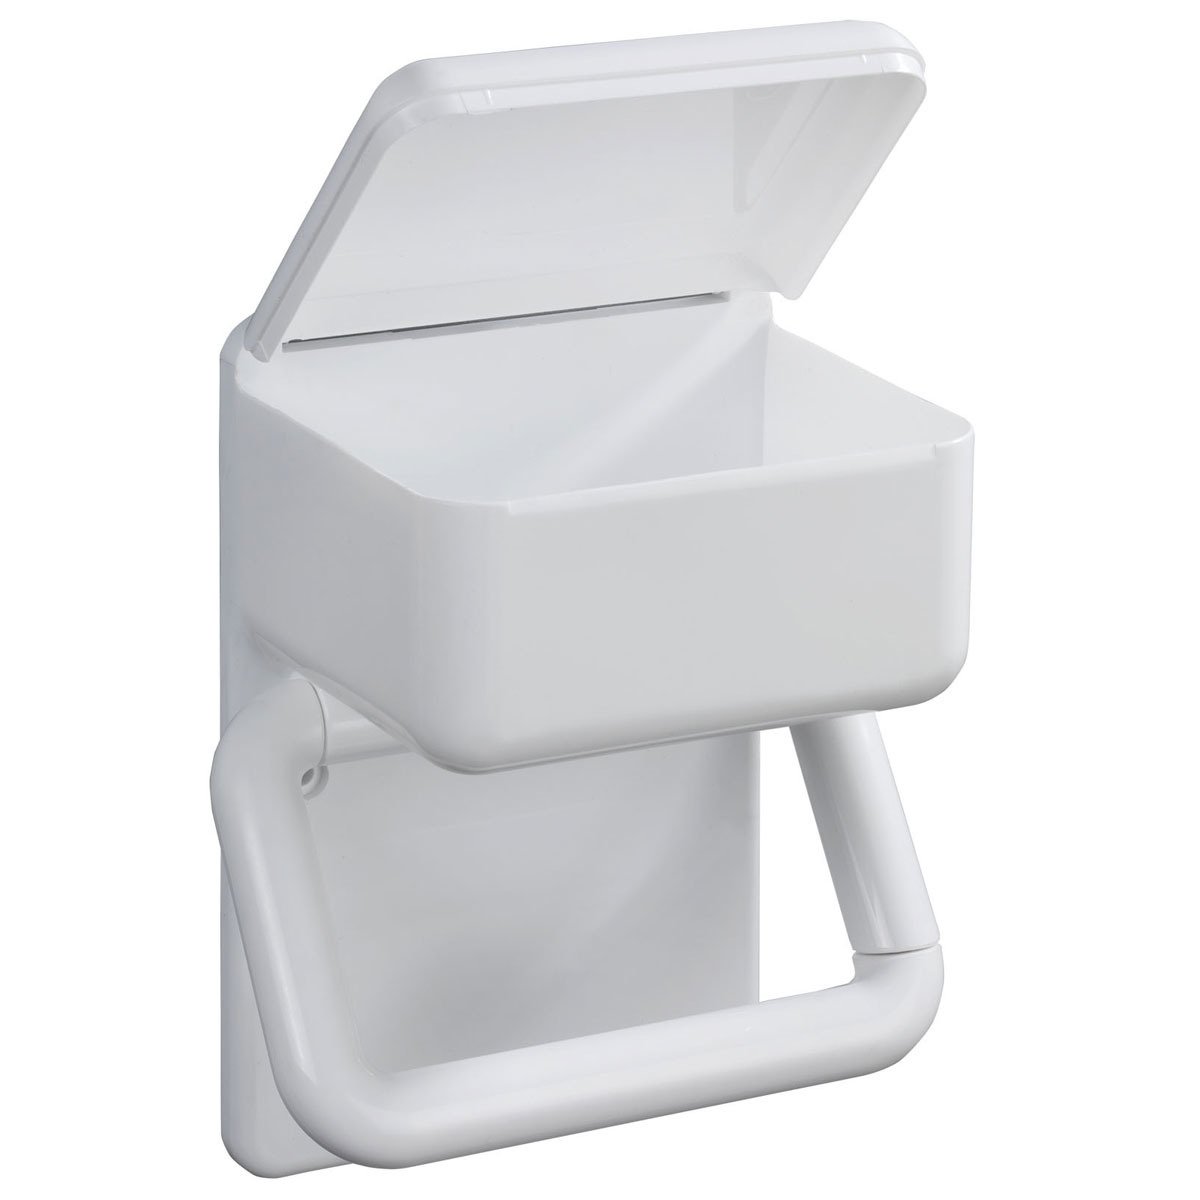 Toilettenpapierhalter 2 in | 1 home24 kaufen